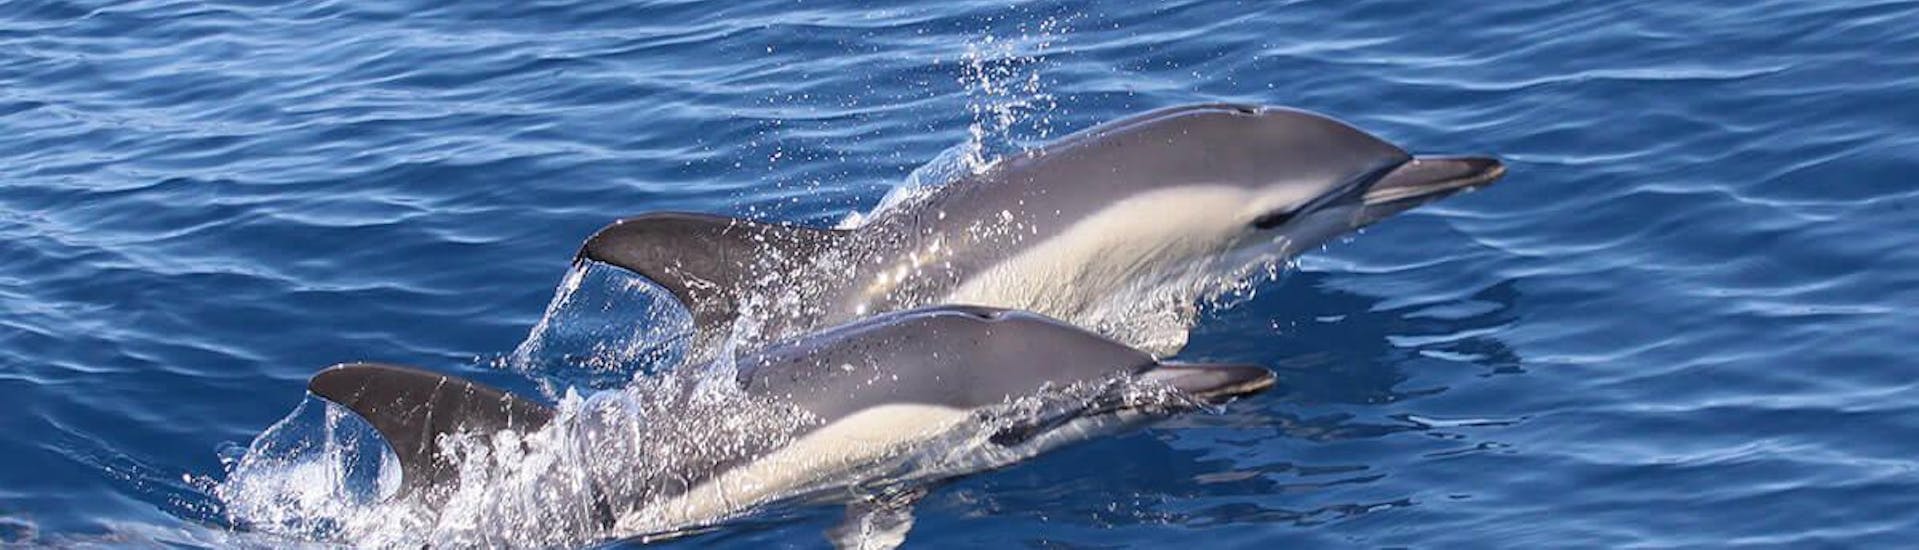 Avistamiento de delfines y ballenas en Costa Adeje con baño.